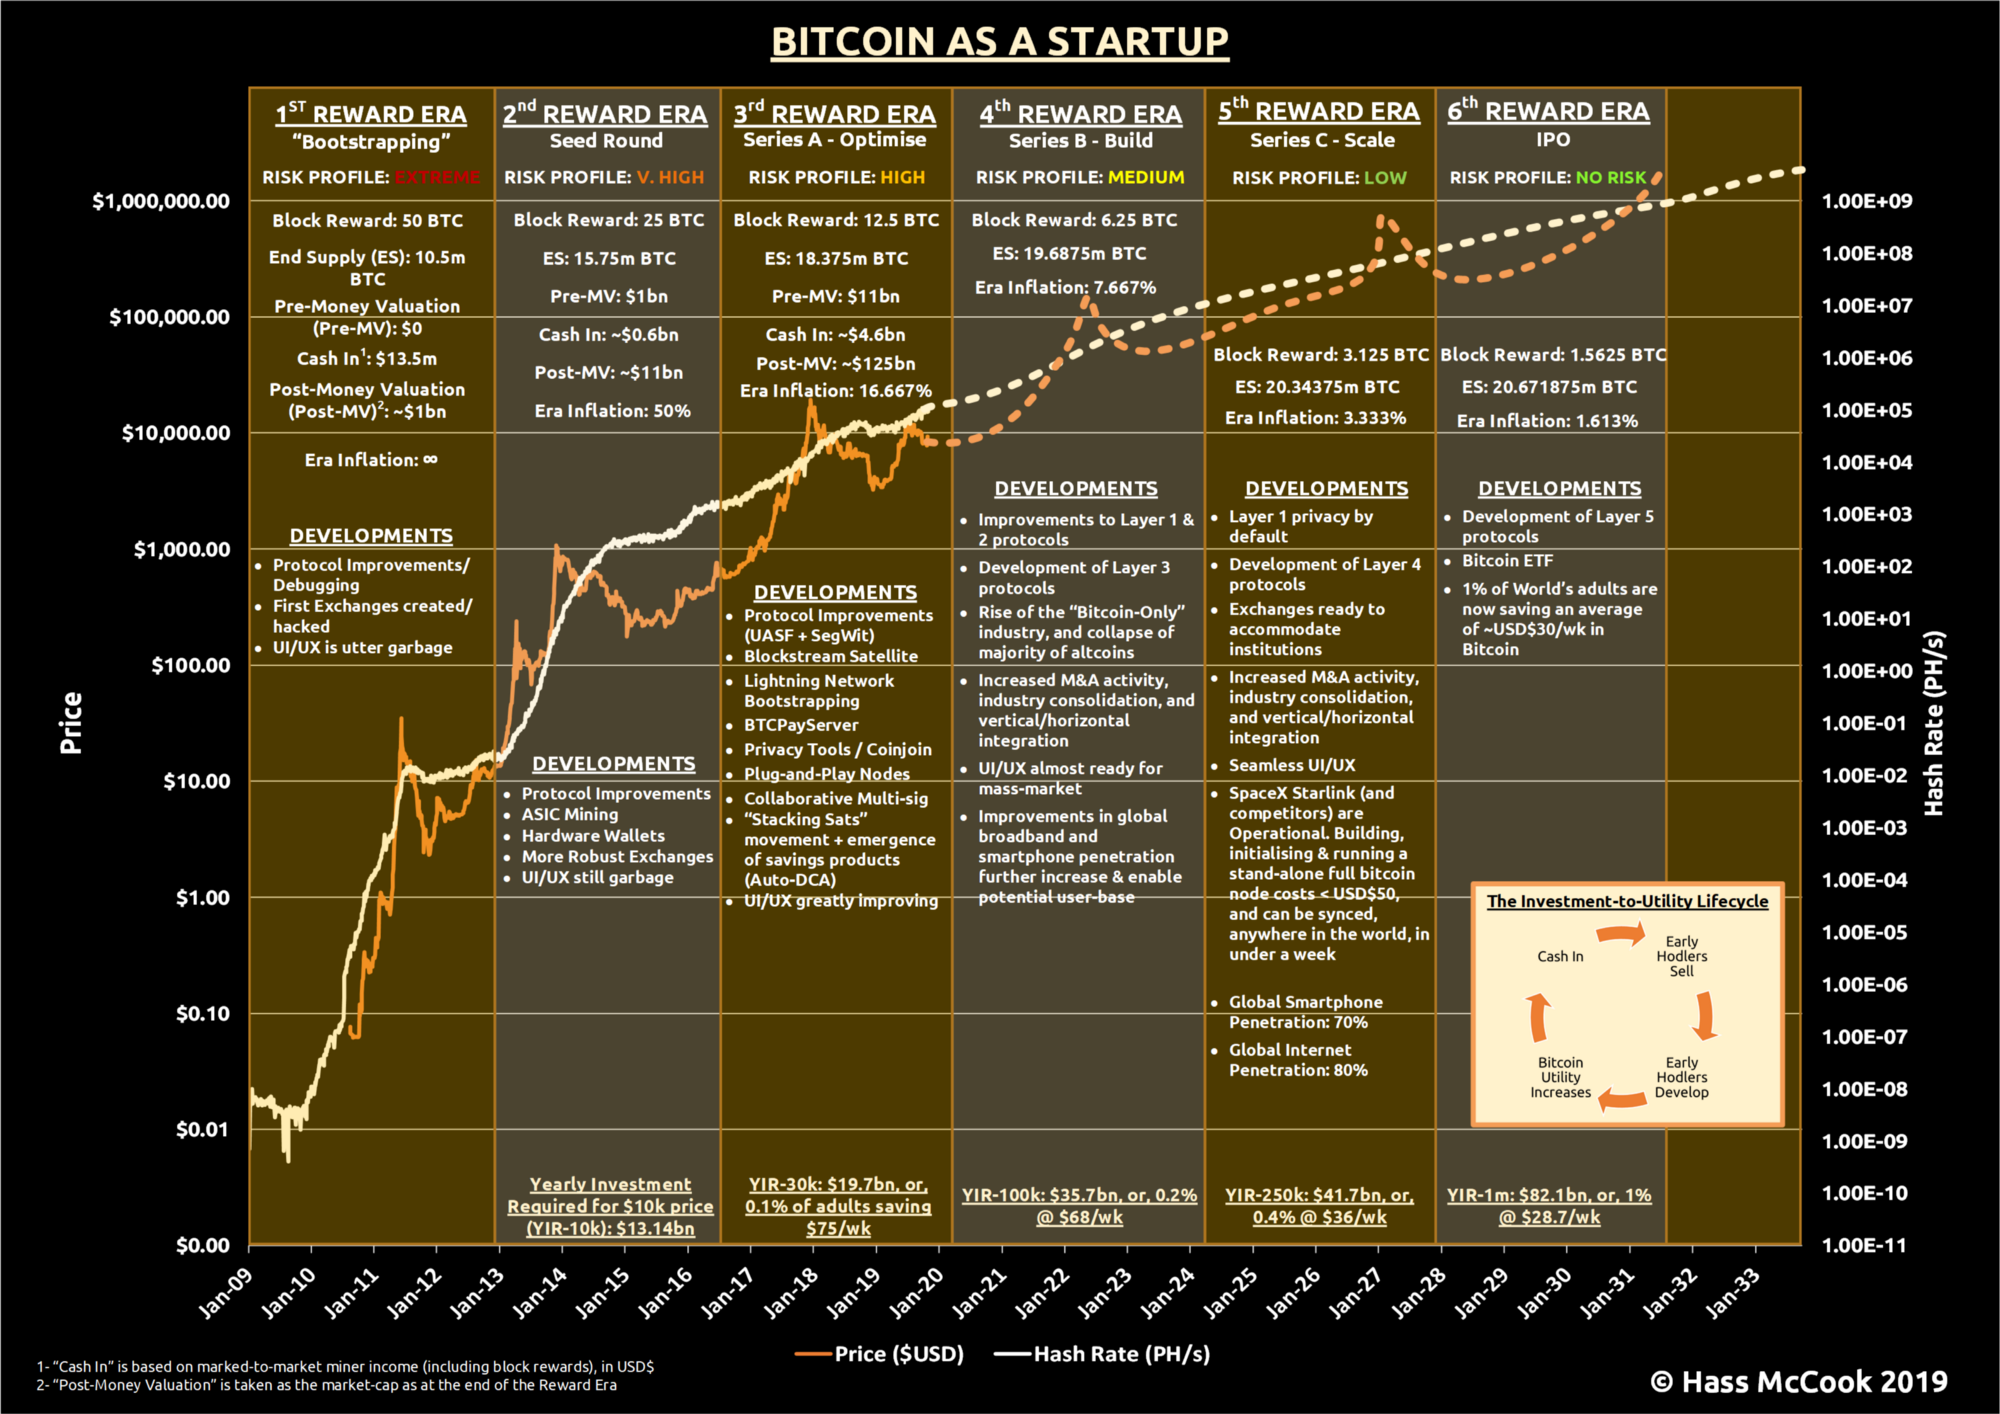 Bitcoin as a Startup